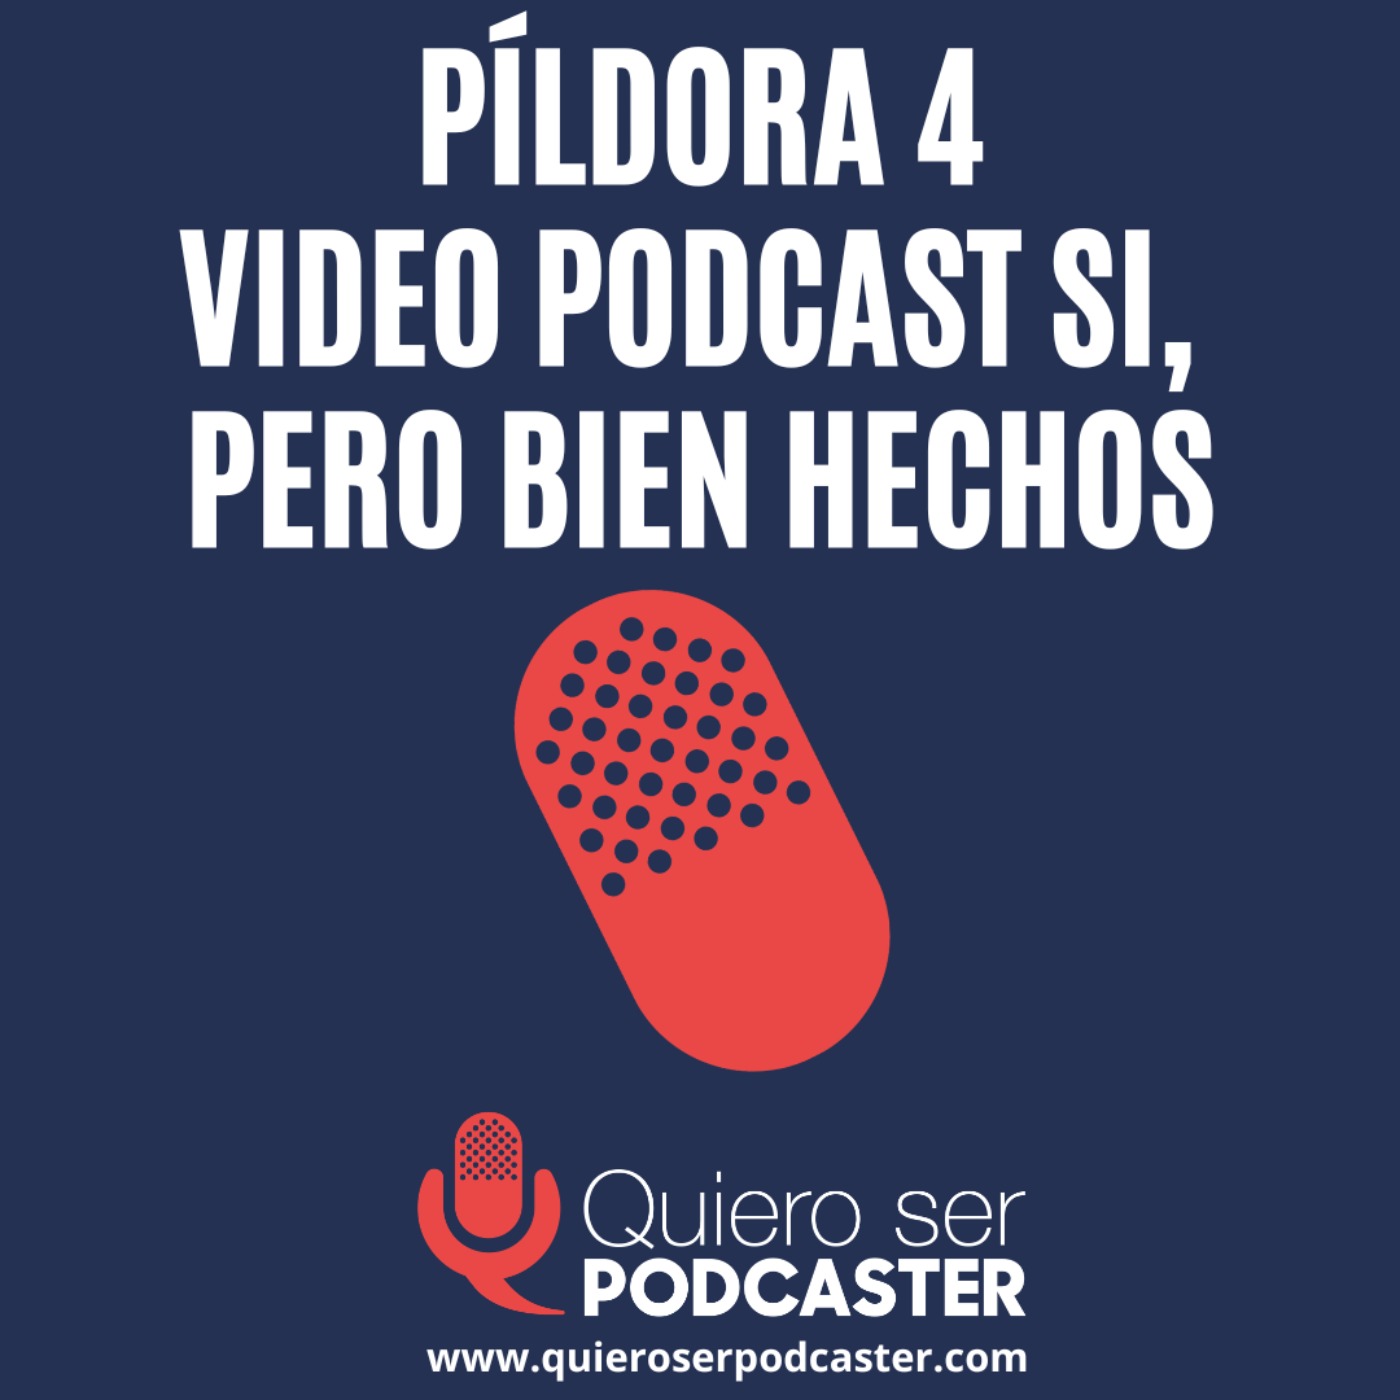 Video podcast si, pero bien hechos - Píldora 4